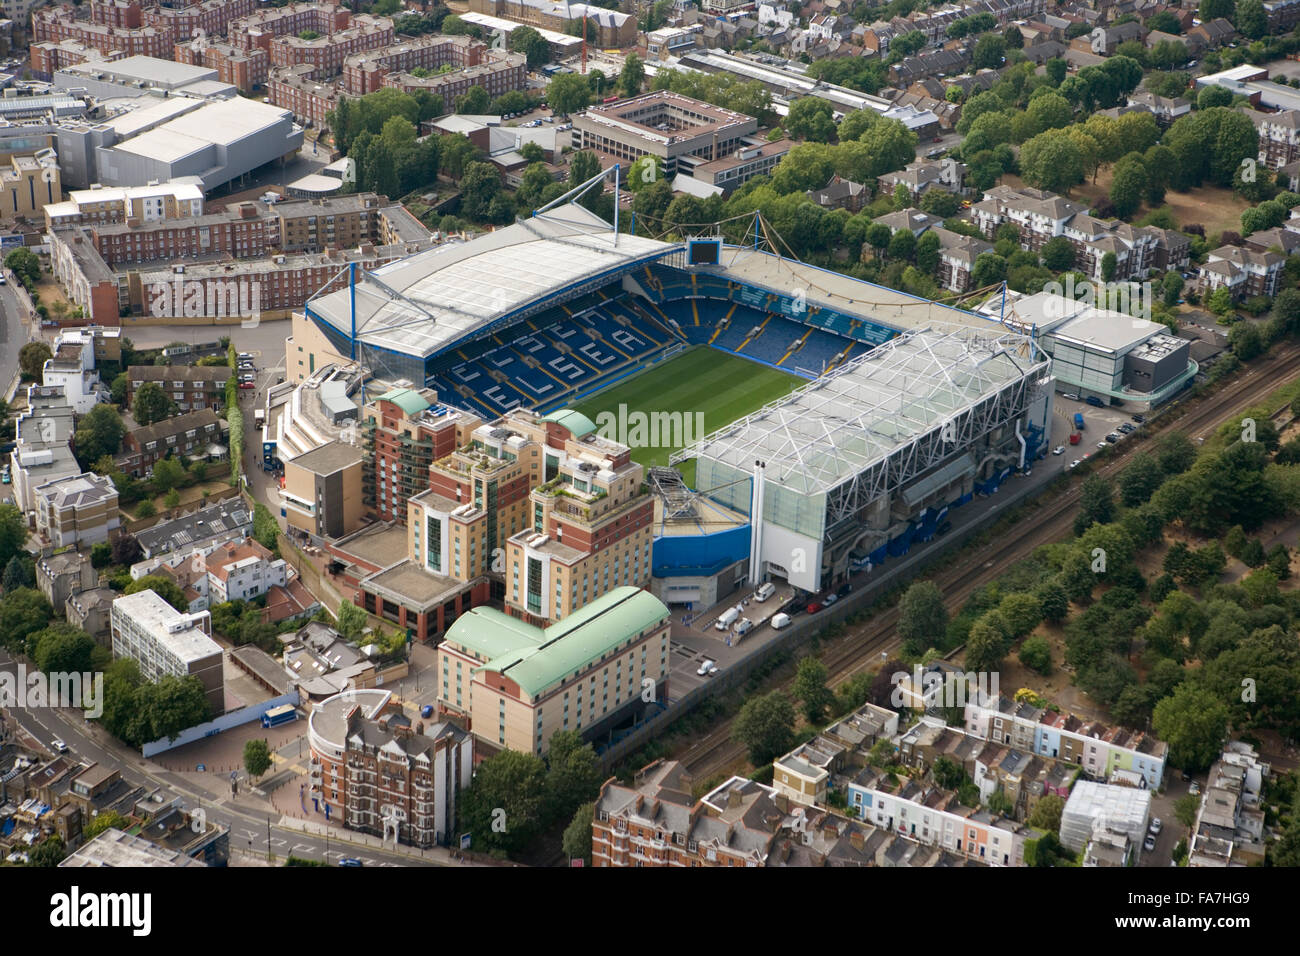 Stade de Stamford Bridge, Londres. Vue aérienne. Accueil du Club de Football de Chelsea. Photographié en août 2006. Banque D'Images